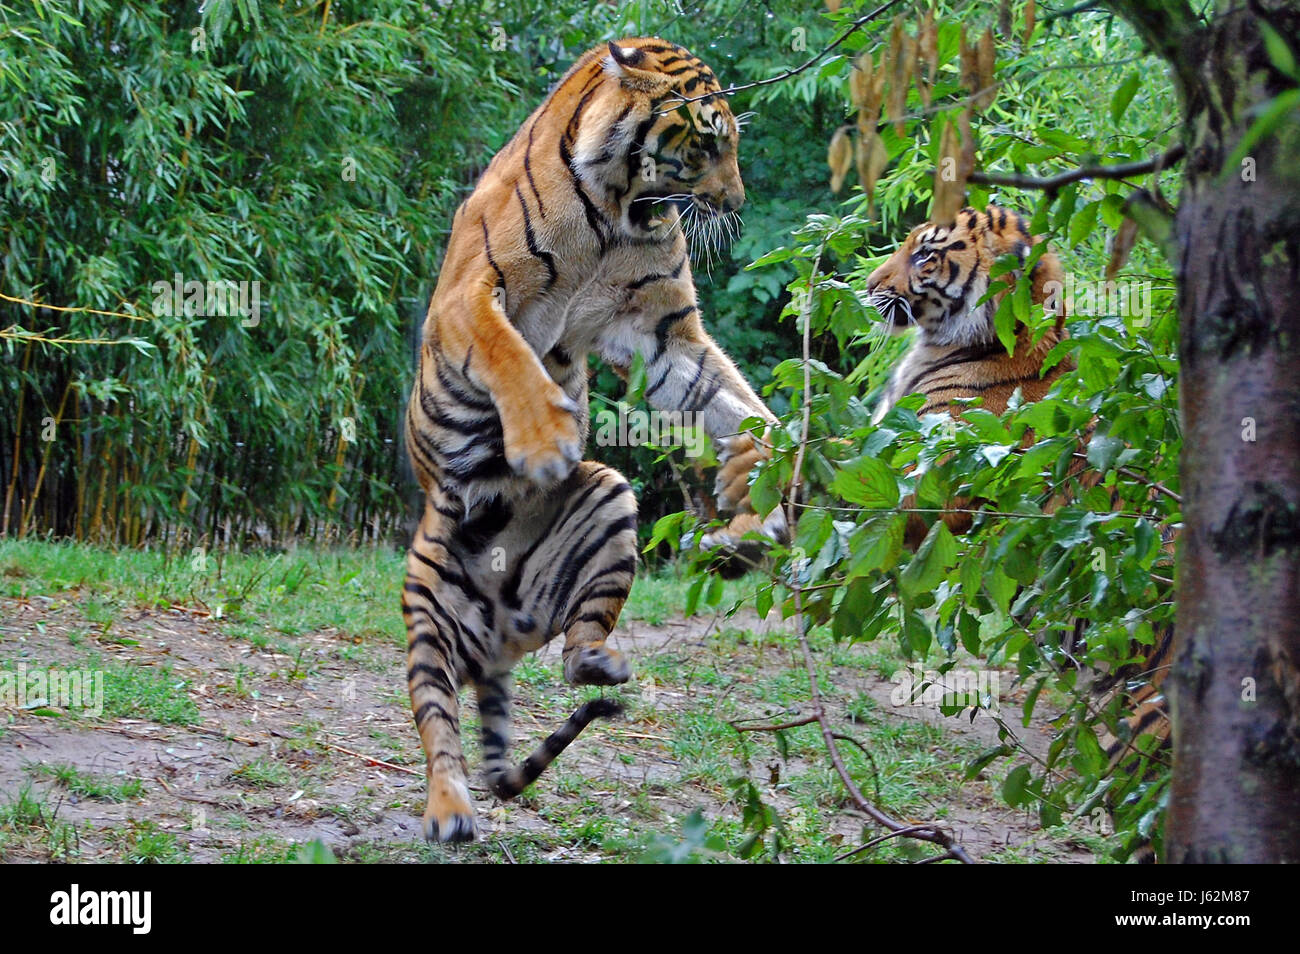 kämpfende Tiere Säugetier Katze Raubkatze Raubkatze Tiger Haut Raubtier zu kämpfen Stockfoto